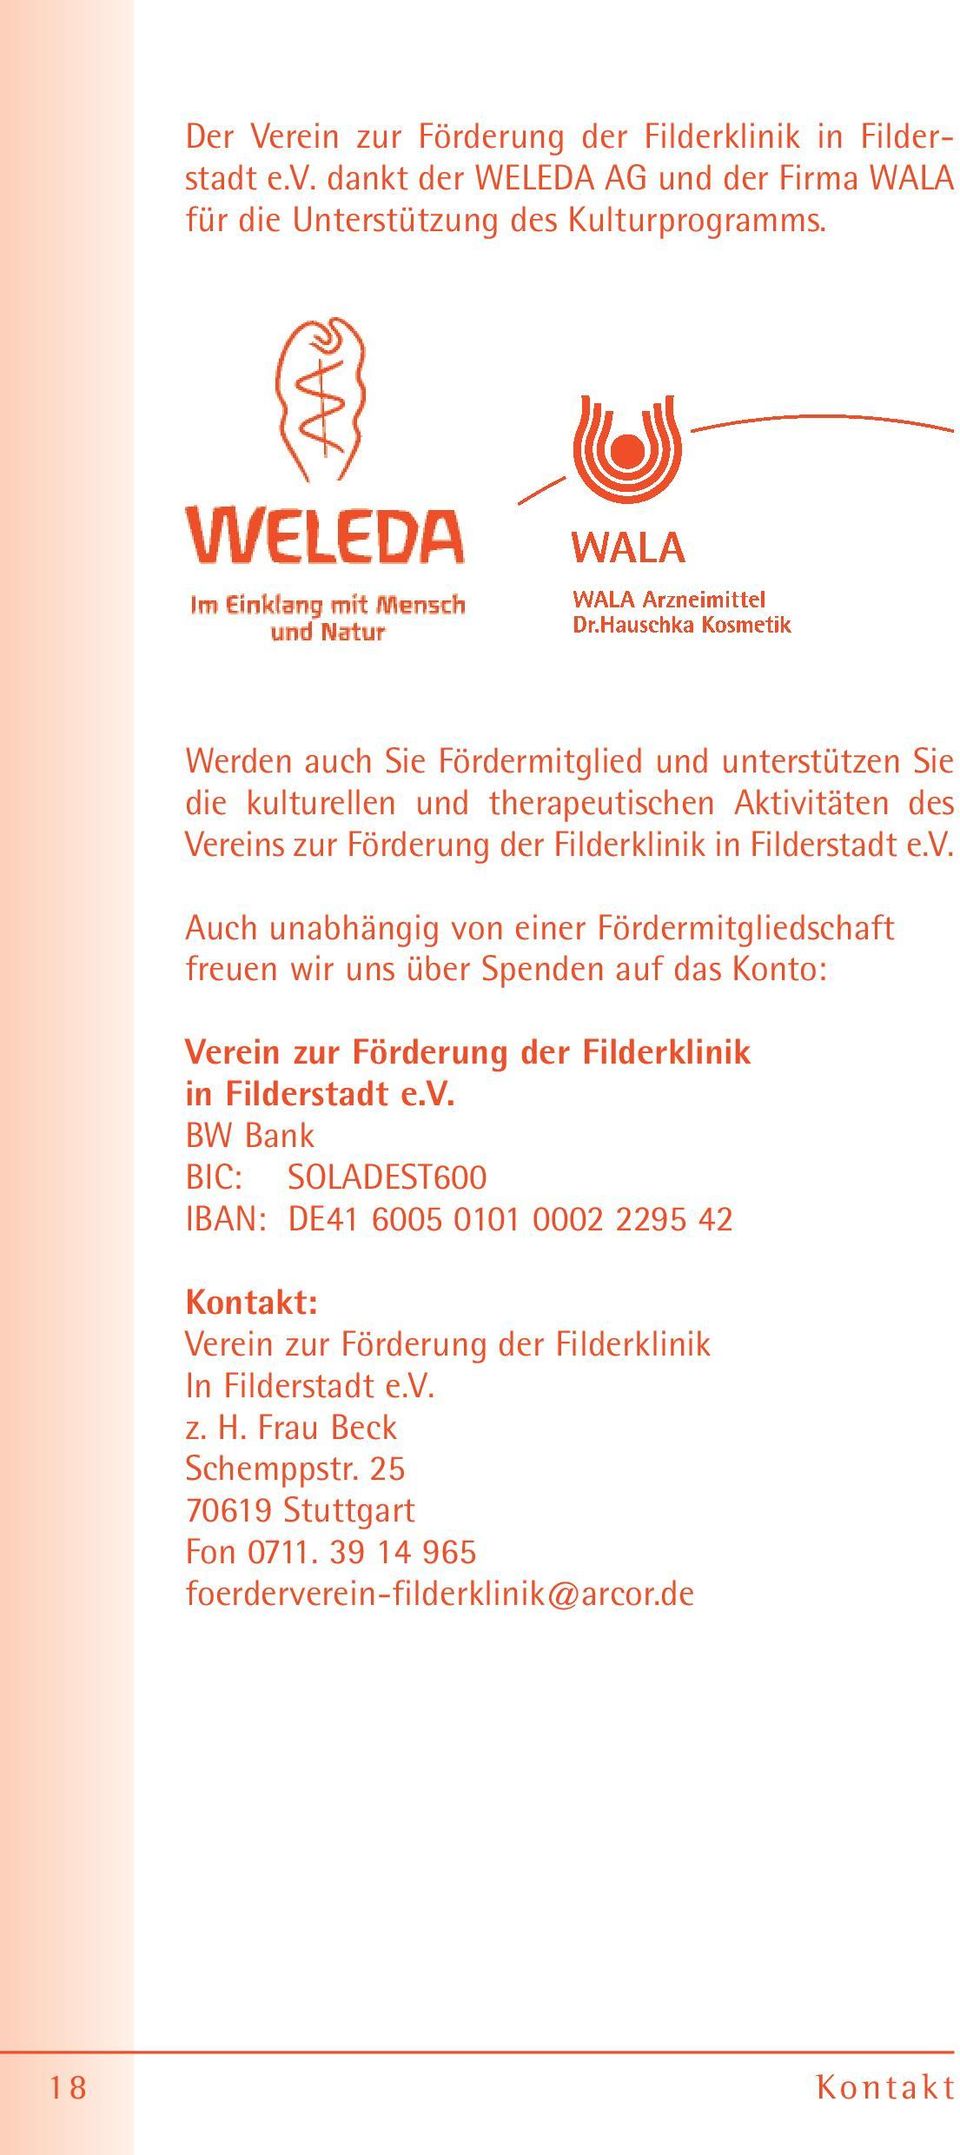 täten des Vereins zur Förderung der Filderklinik in Filderstadt e.v.